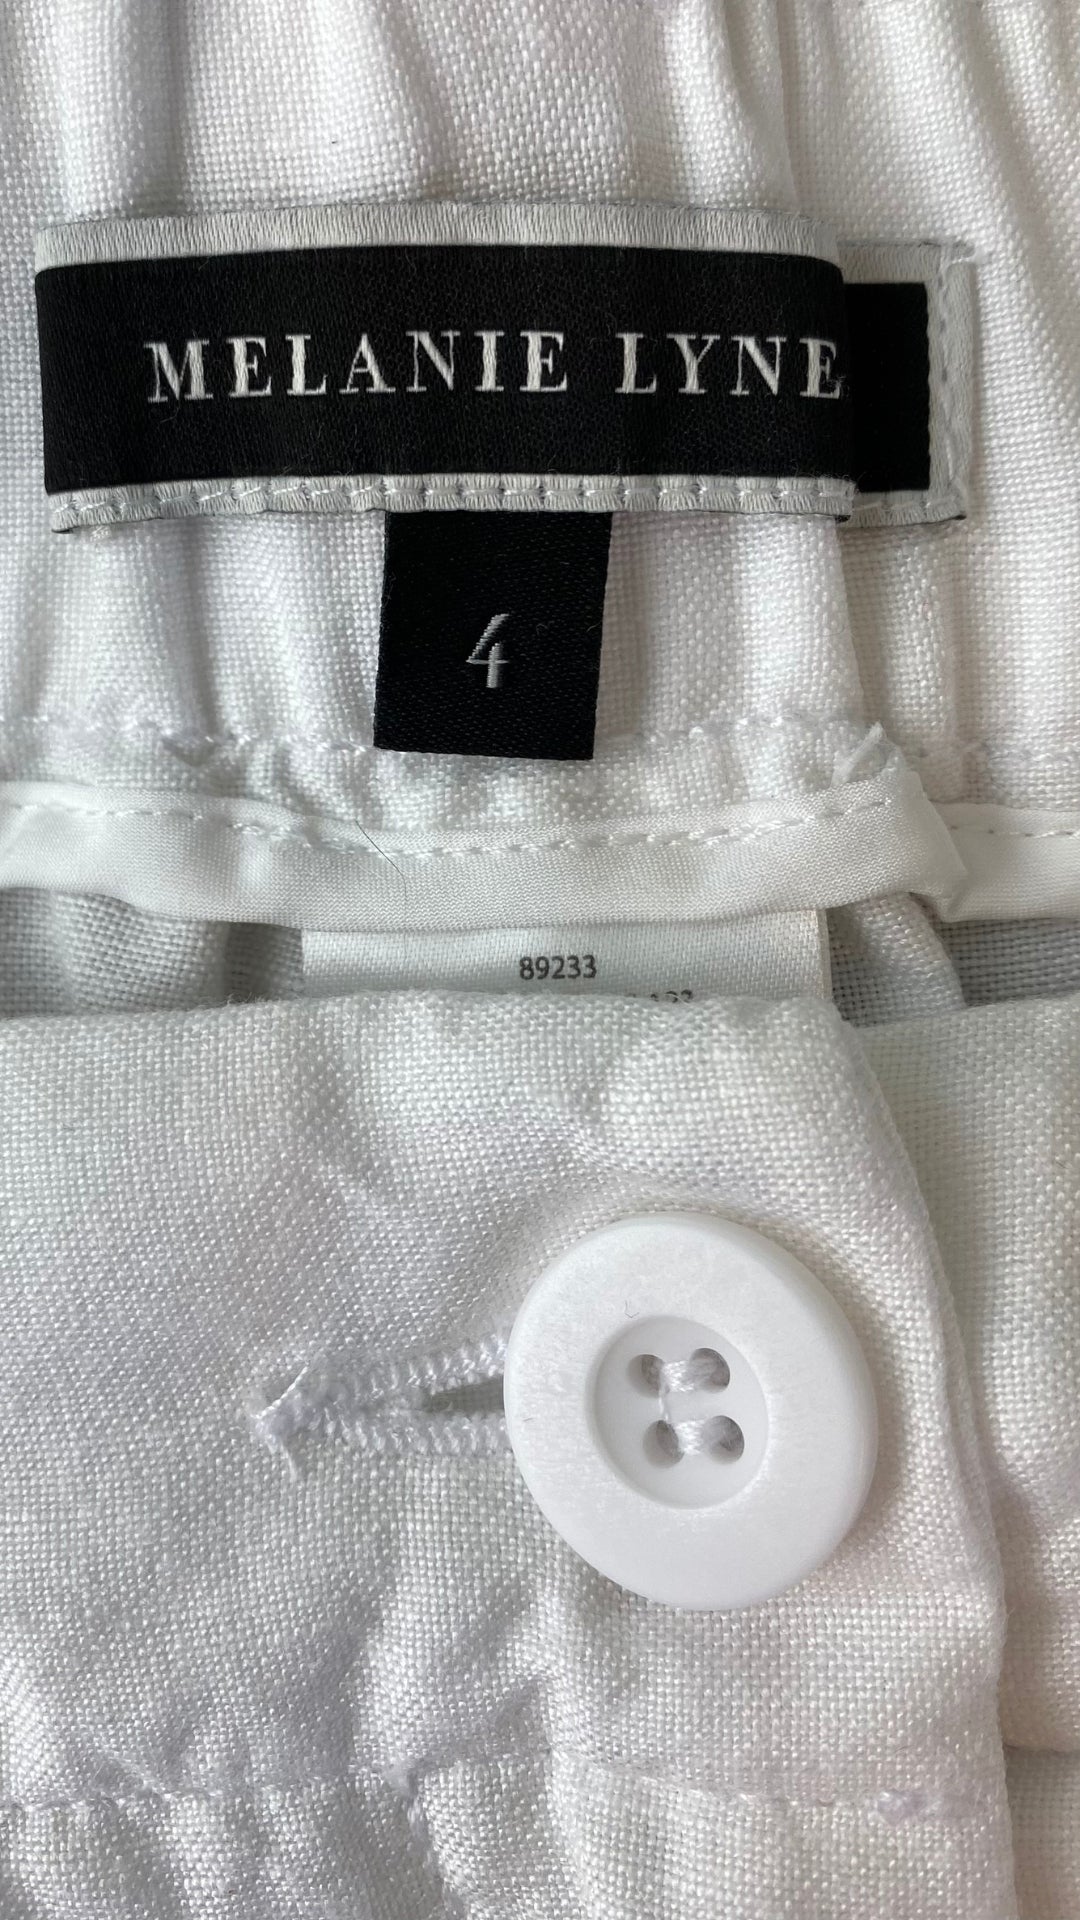 Pantalon blanc longueur 3/4 en mélange de lin Melanie Lyne, taille 4. Vue de l'étiquette de marque et taille.